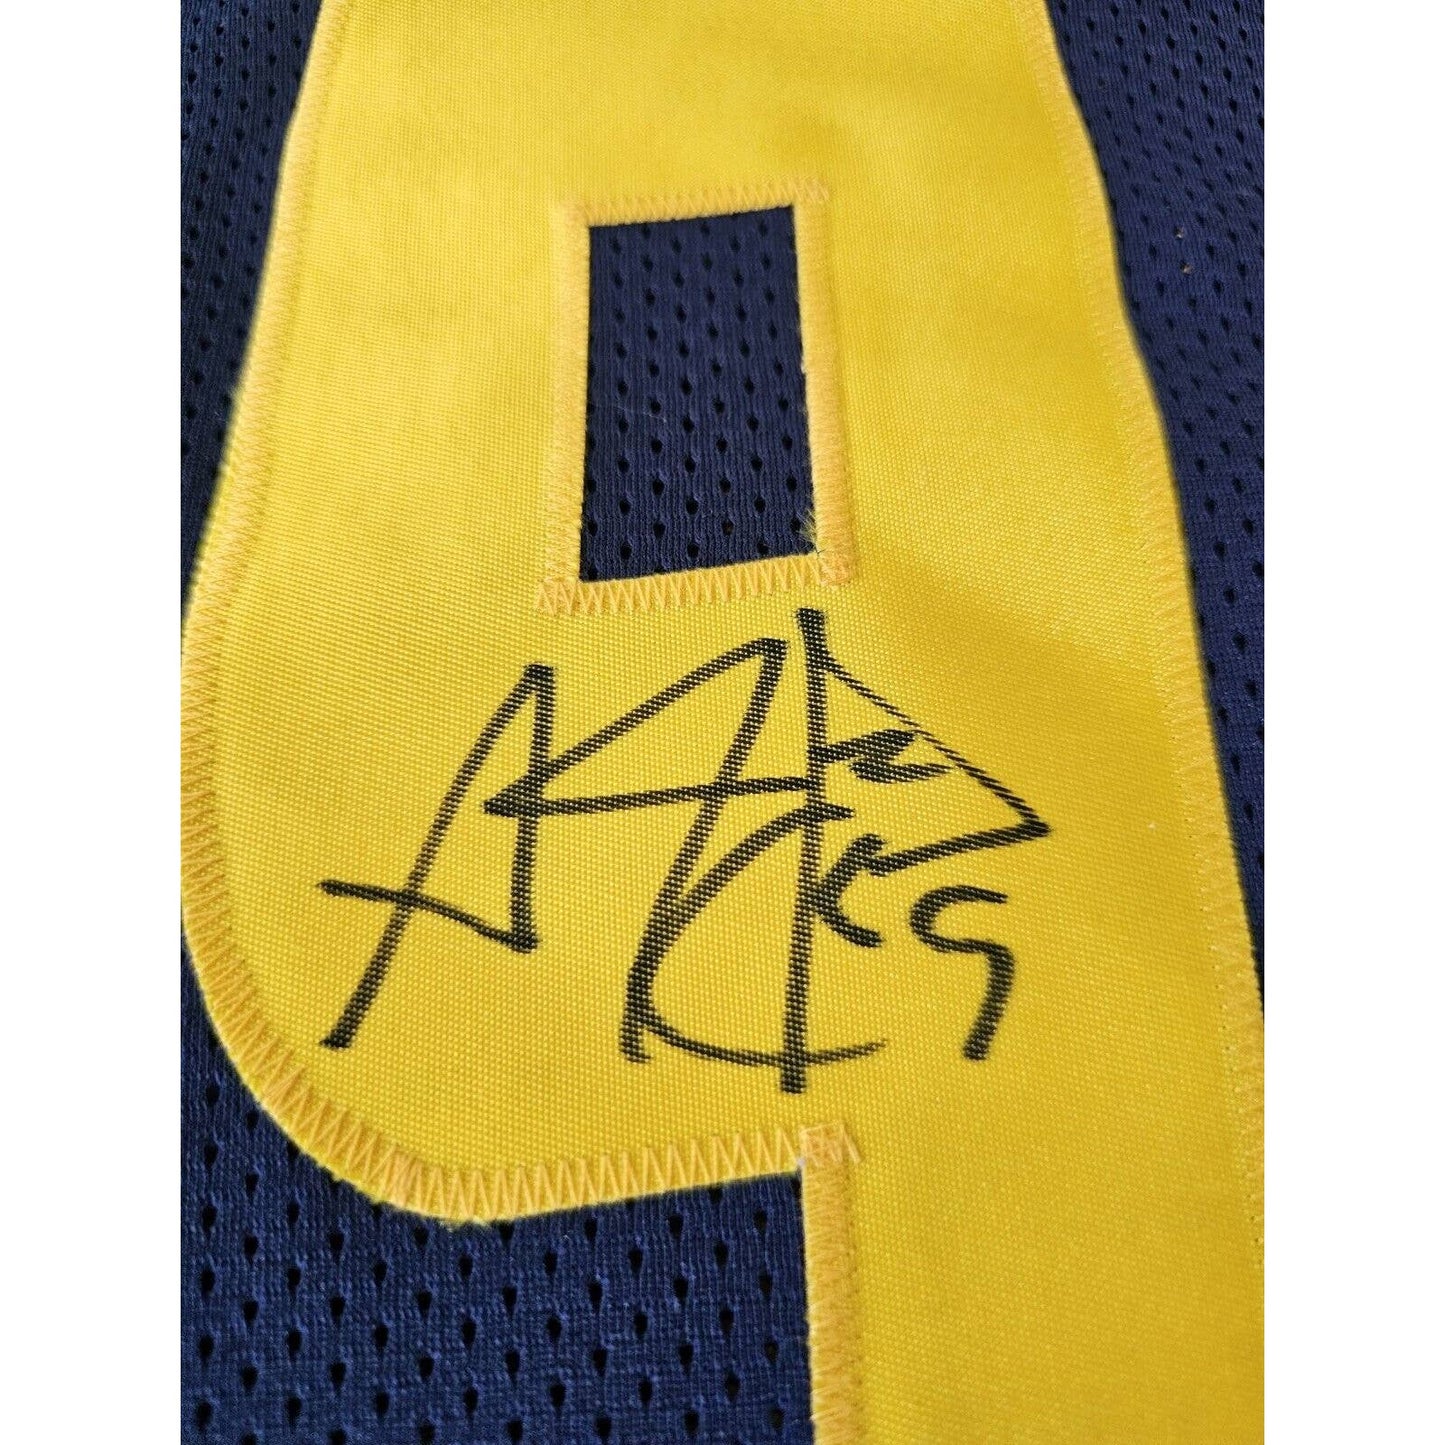 Adam “Pacman” Jones Autographed/Signed Jersey West Virginia Mountaineers READ